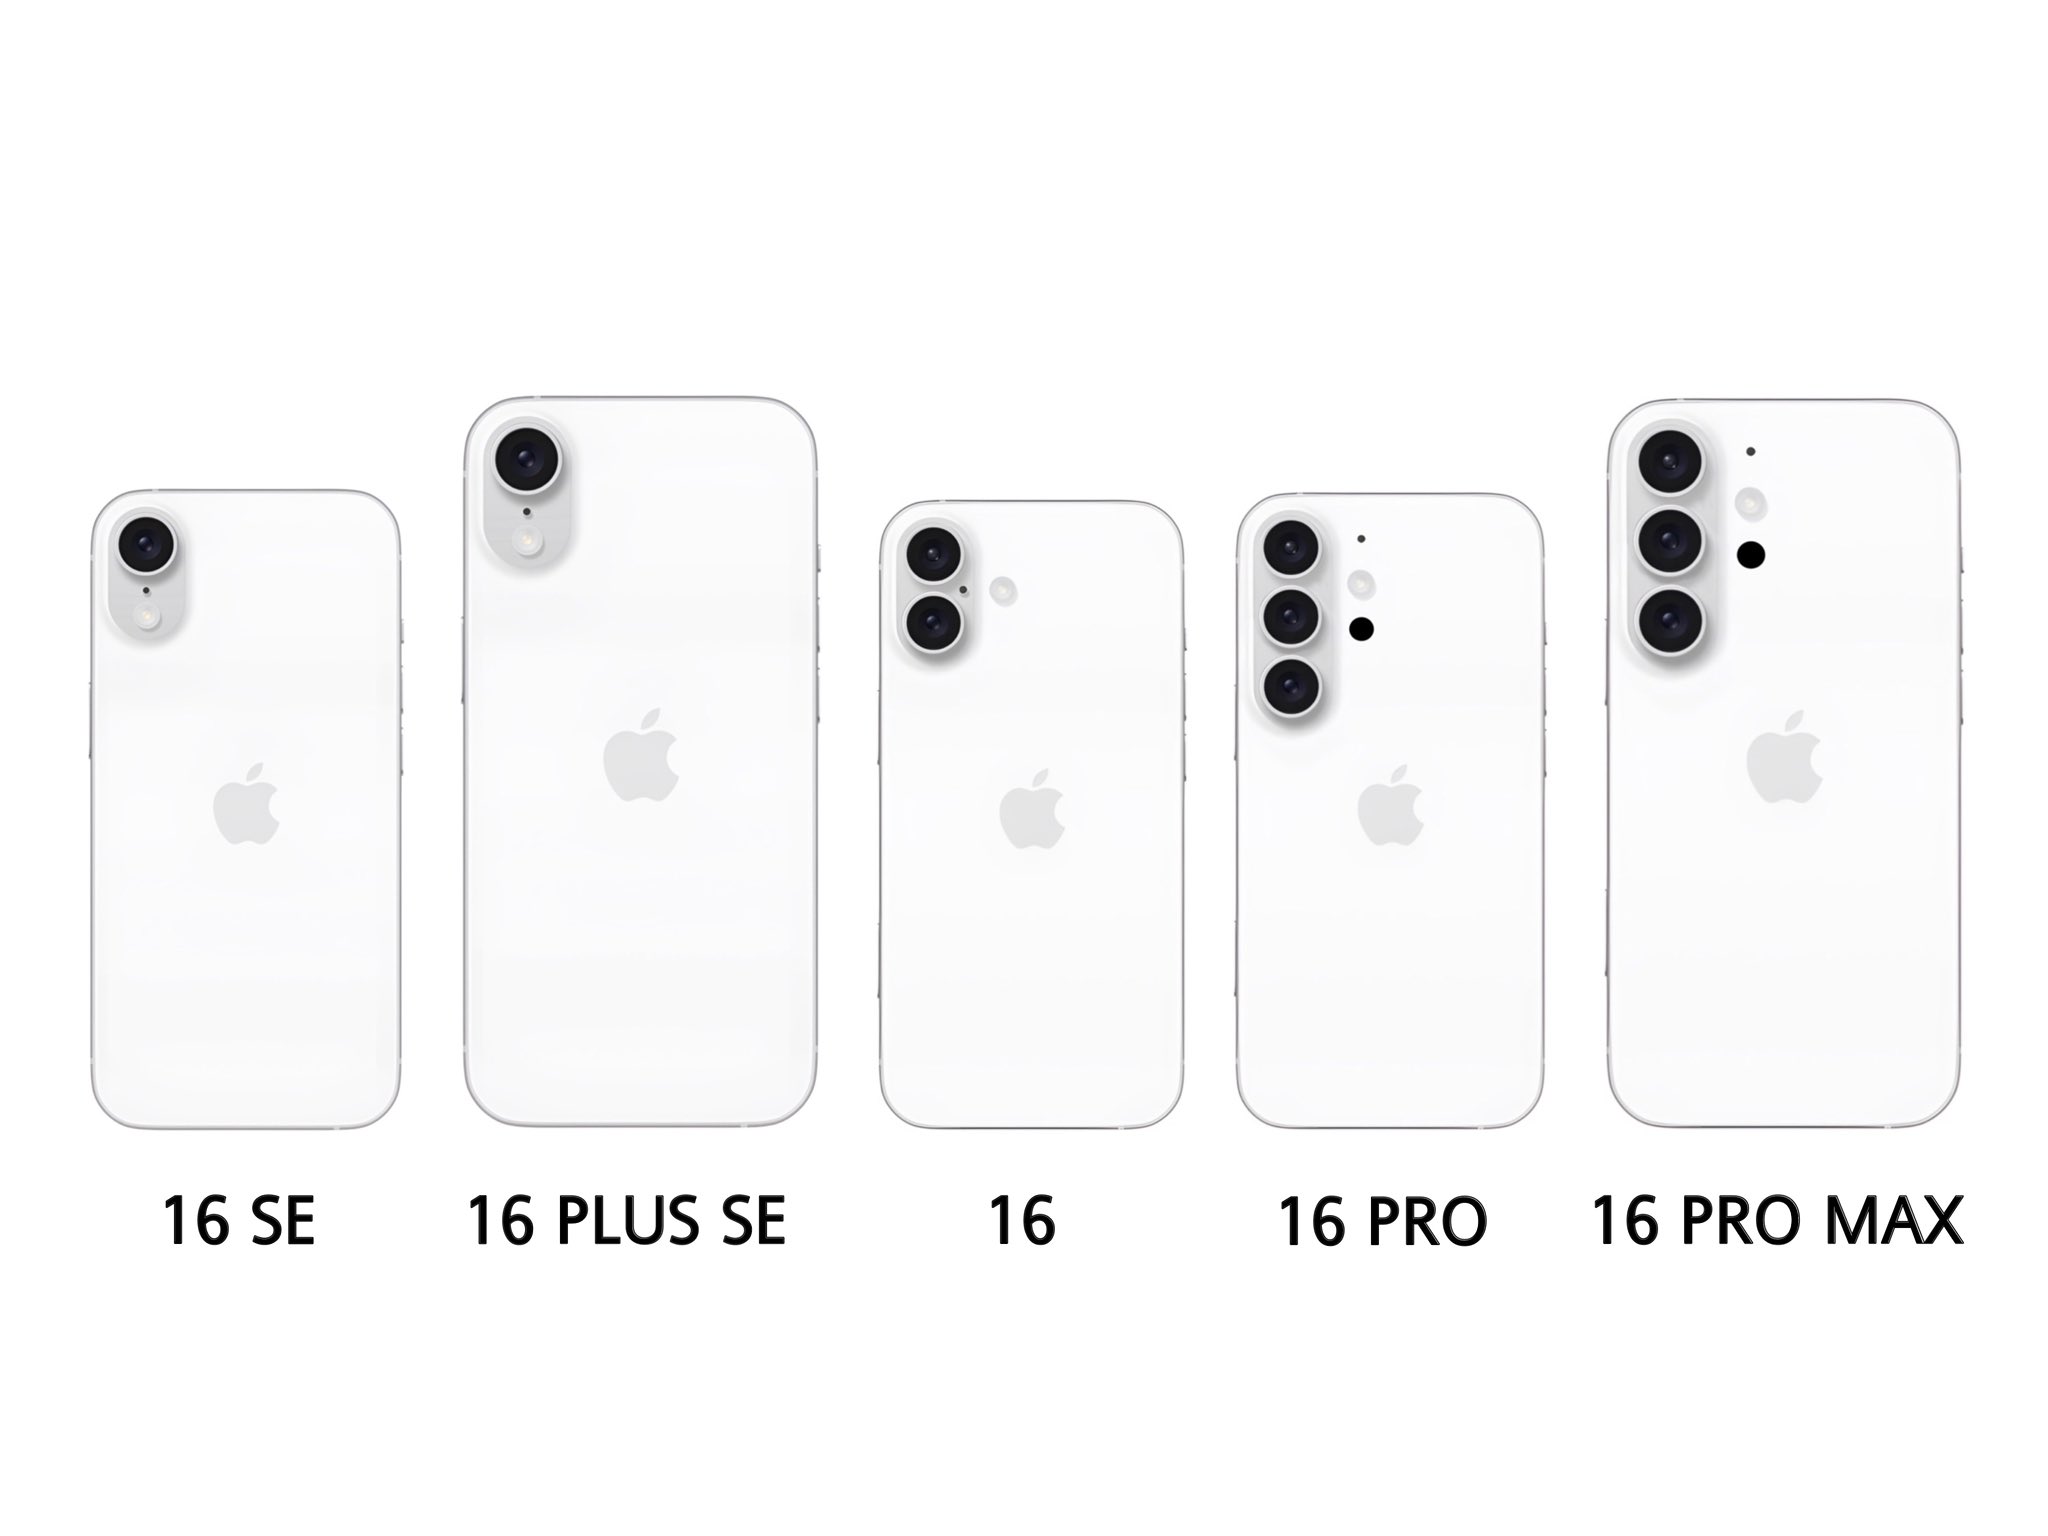 消息称苹果 iPhone 16 Pro Max 将拥有 iPhone 有史以来最强手机续航能力，仍配备 8GB 内存